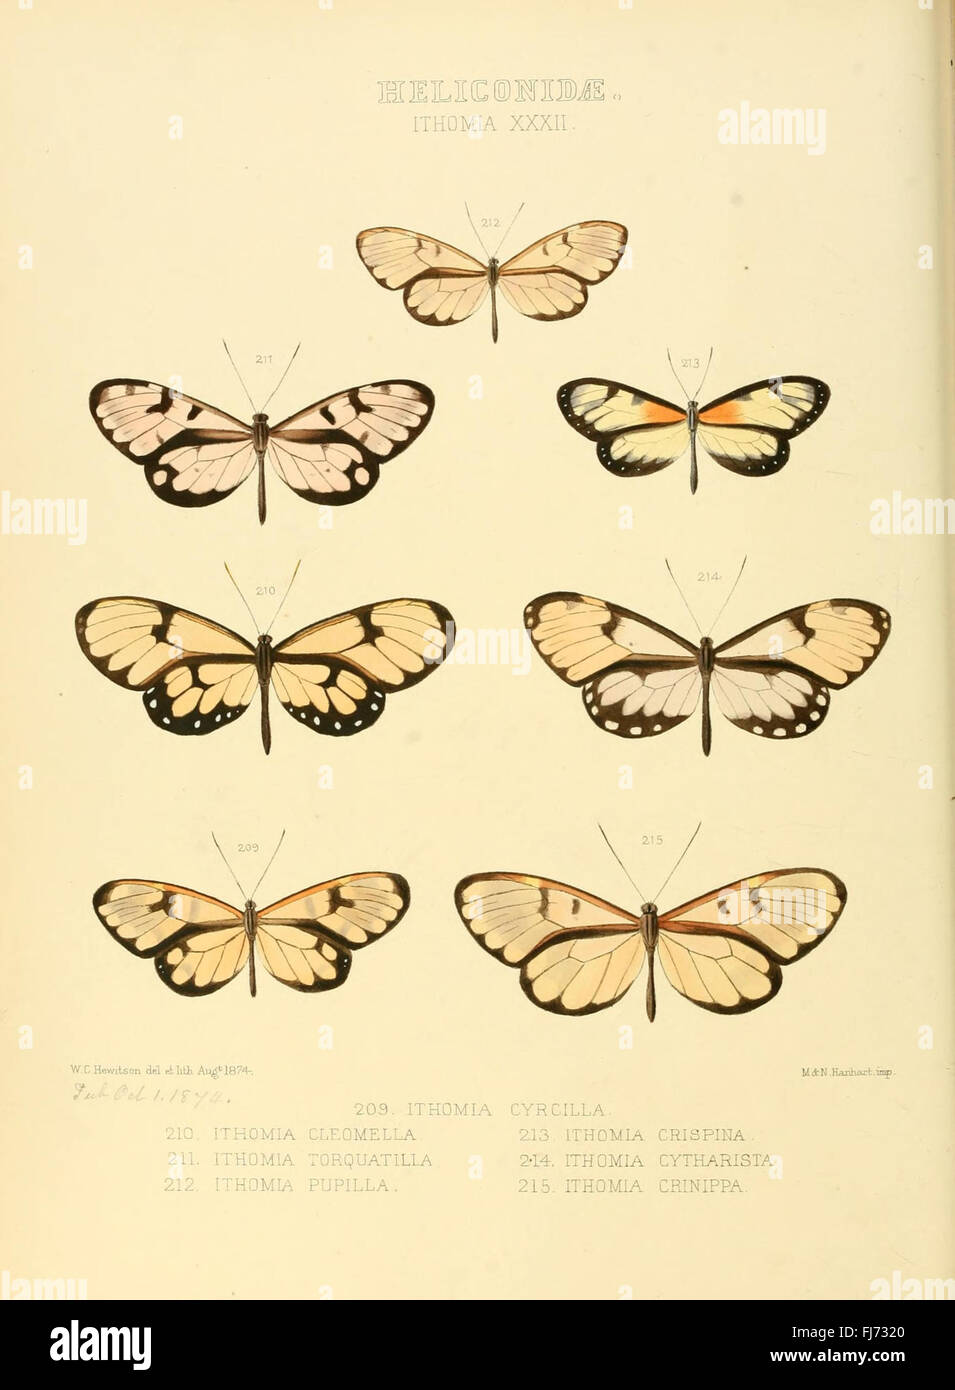 Illustrazioni di nuove specie di farfalle esotiche (Heliconidae- Ithomia XXXII) Foto Stock